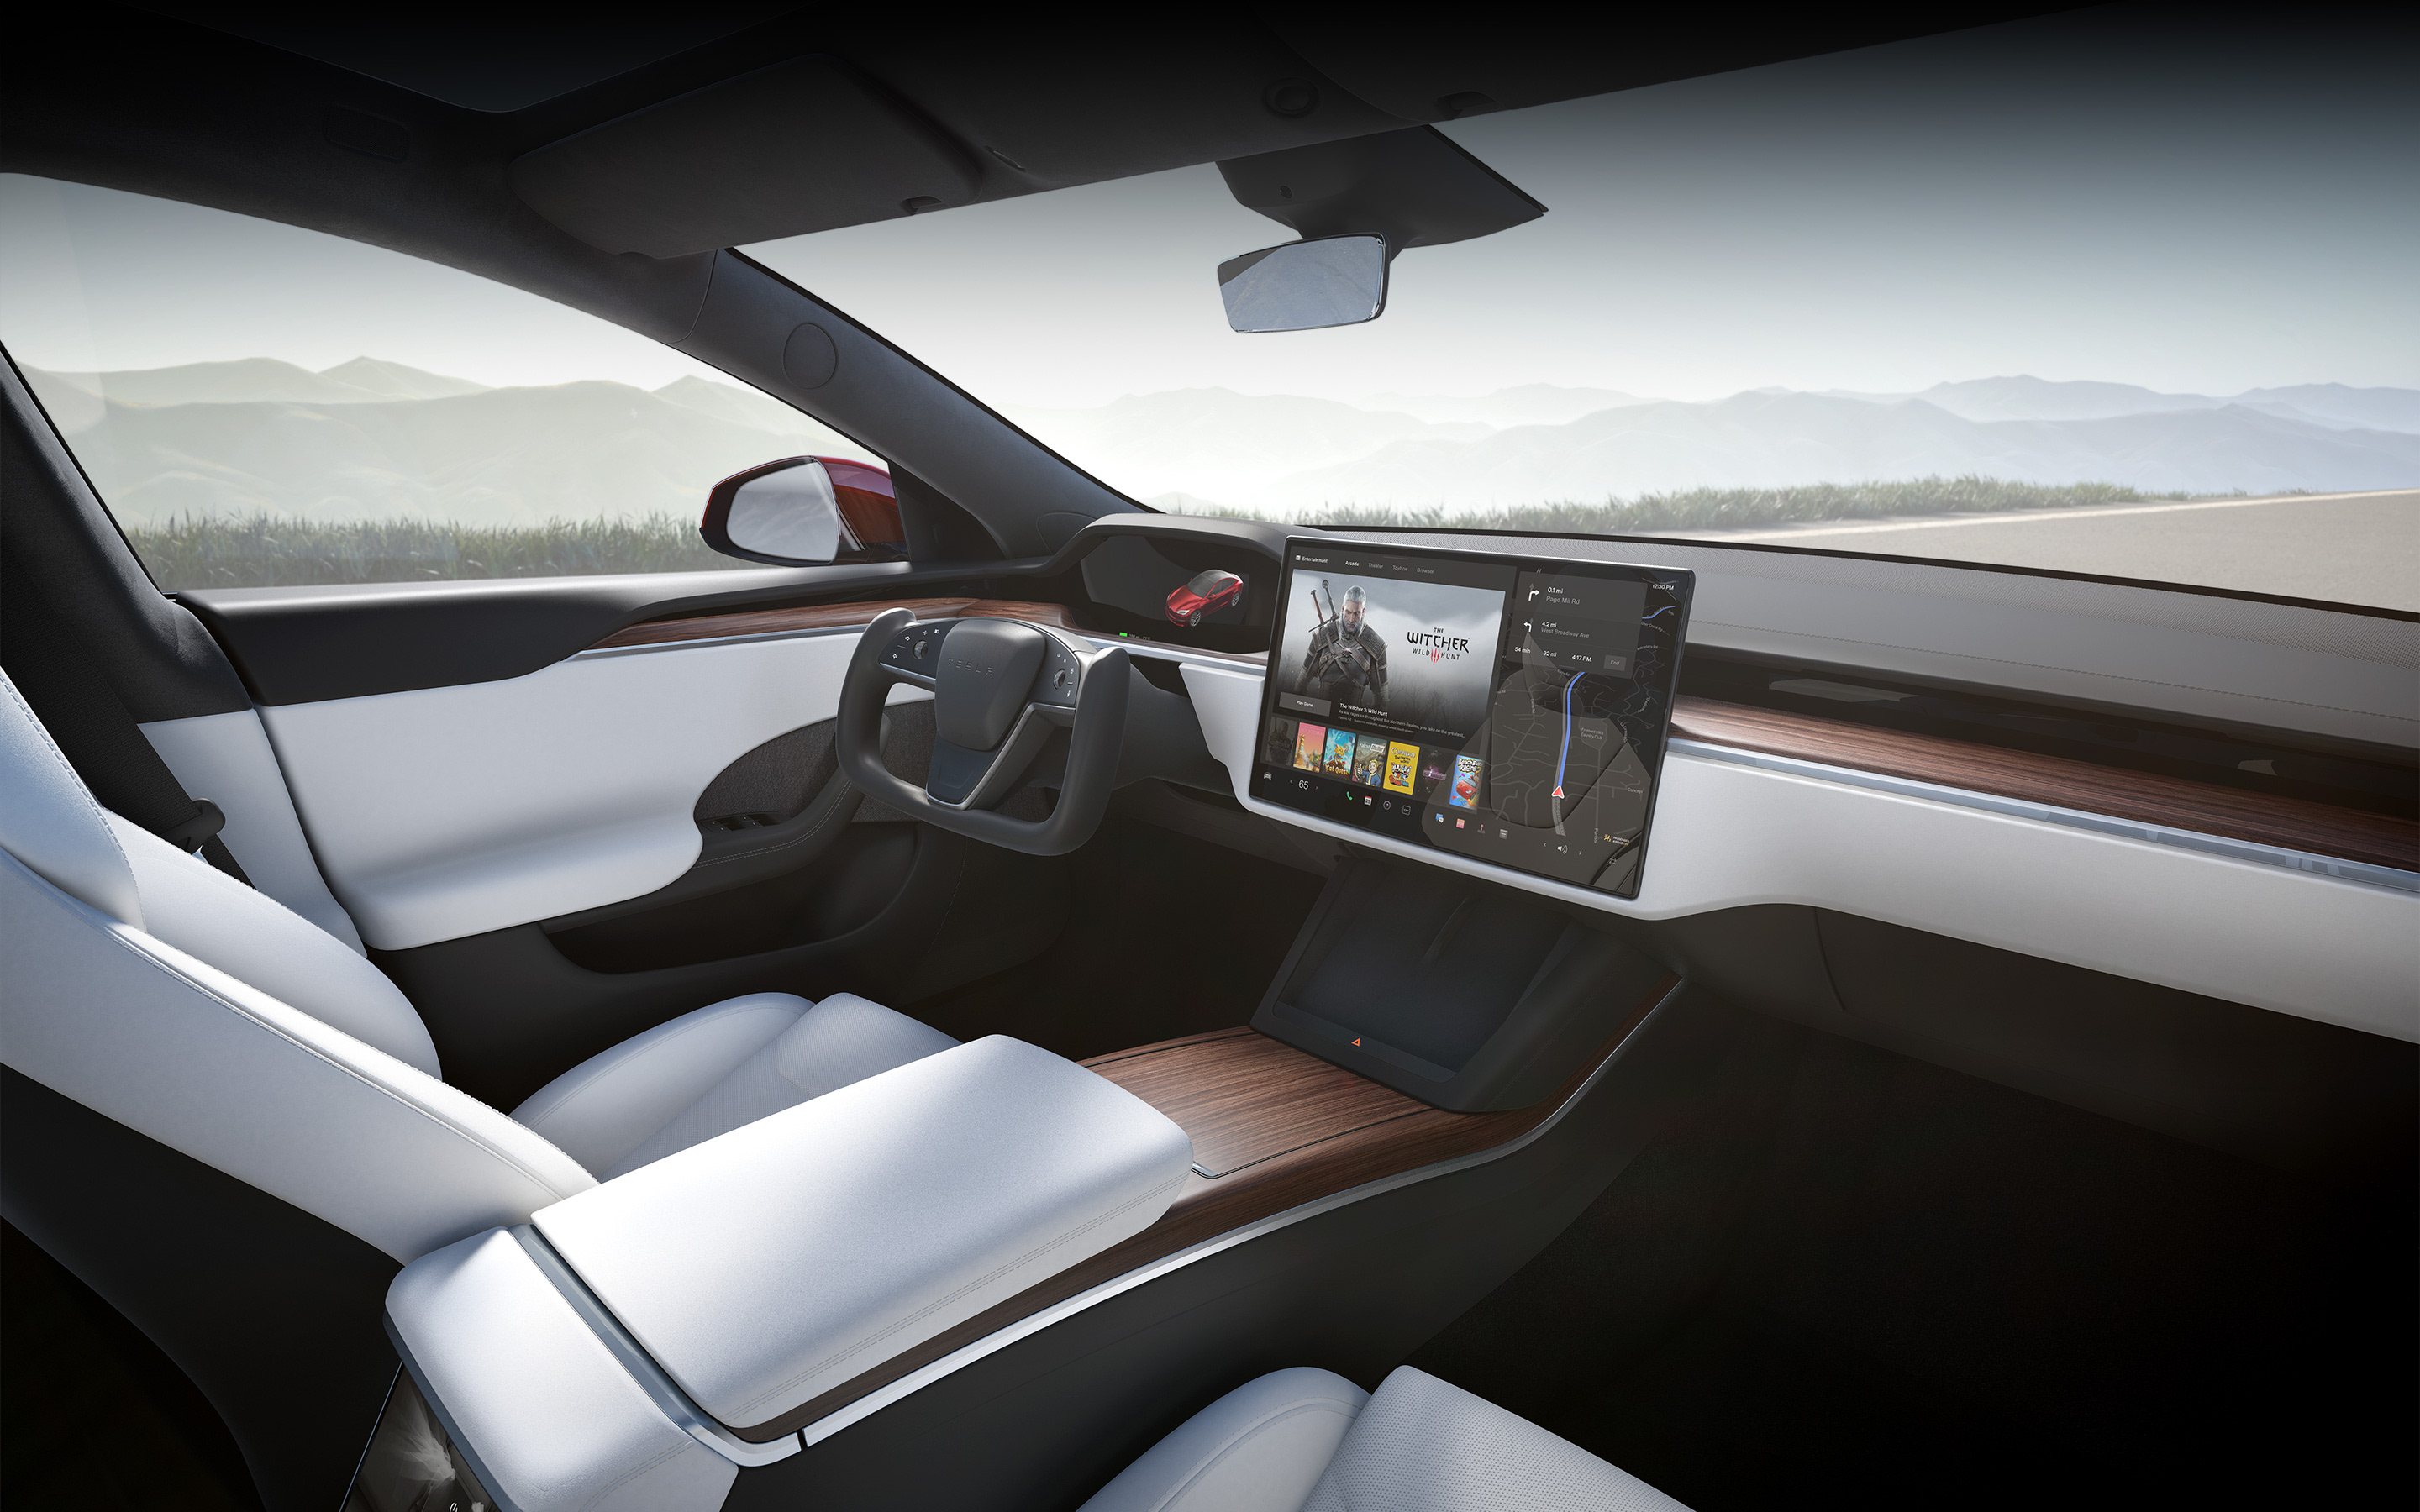 Model S met wit interieur, gezien vanaf de passagiersstoel, met focus op het infotainment-touchscreen